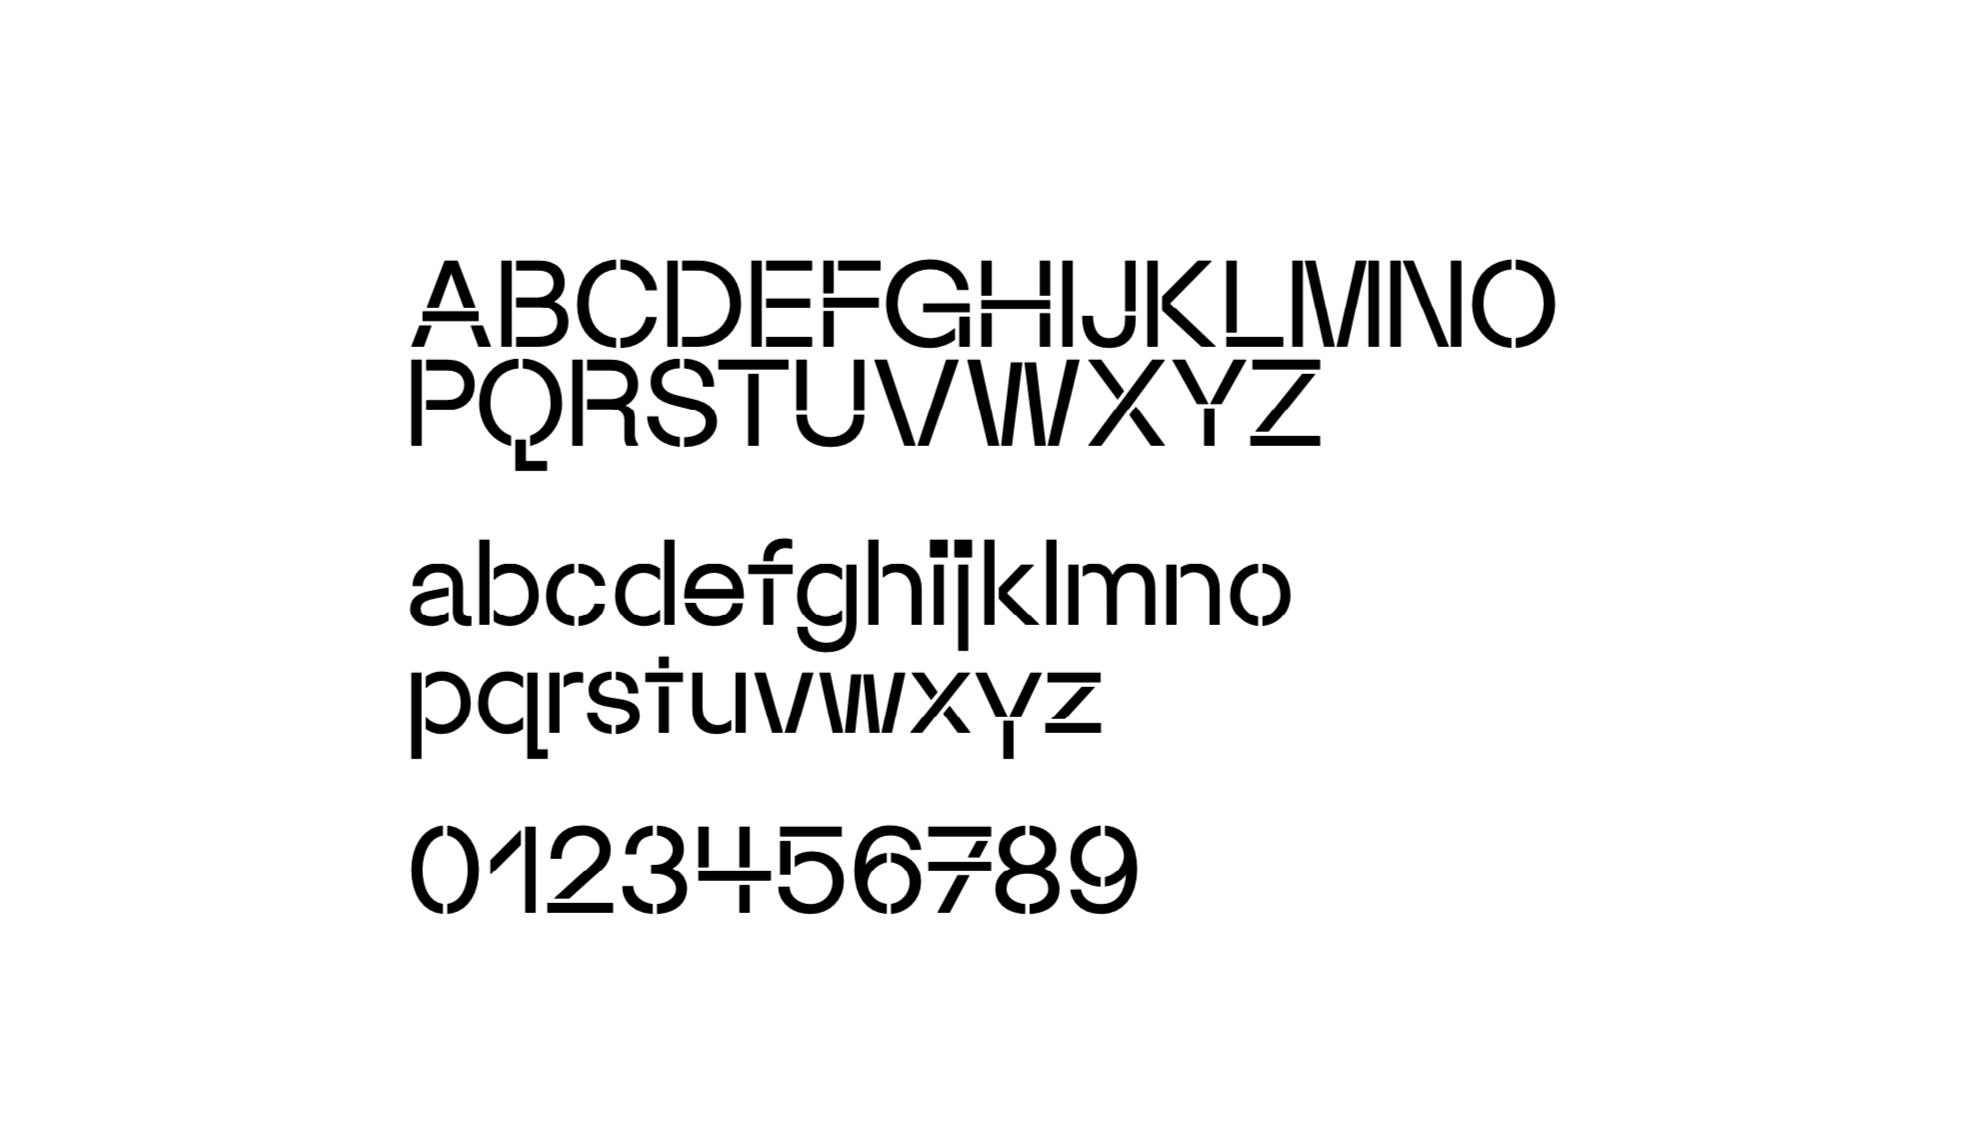 Lettere e numeri in versione stencil